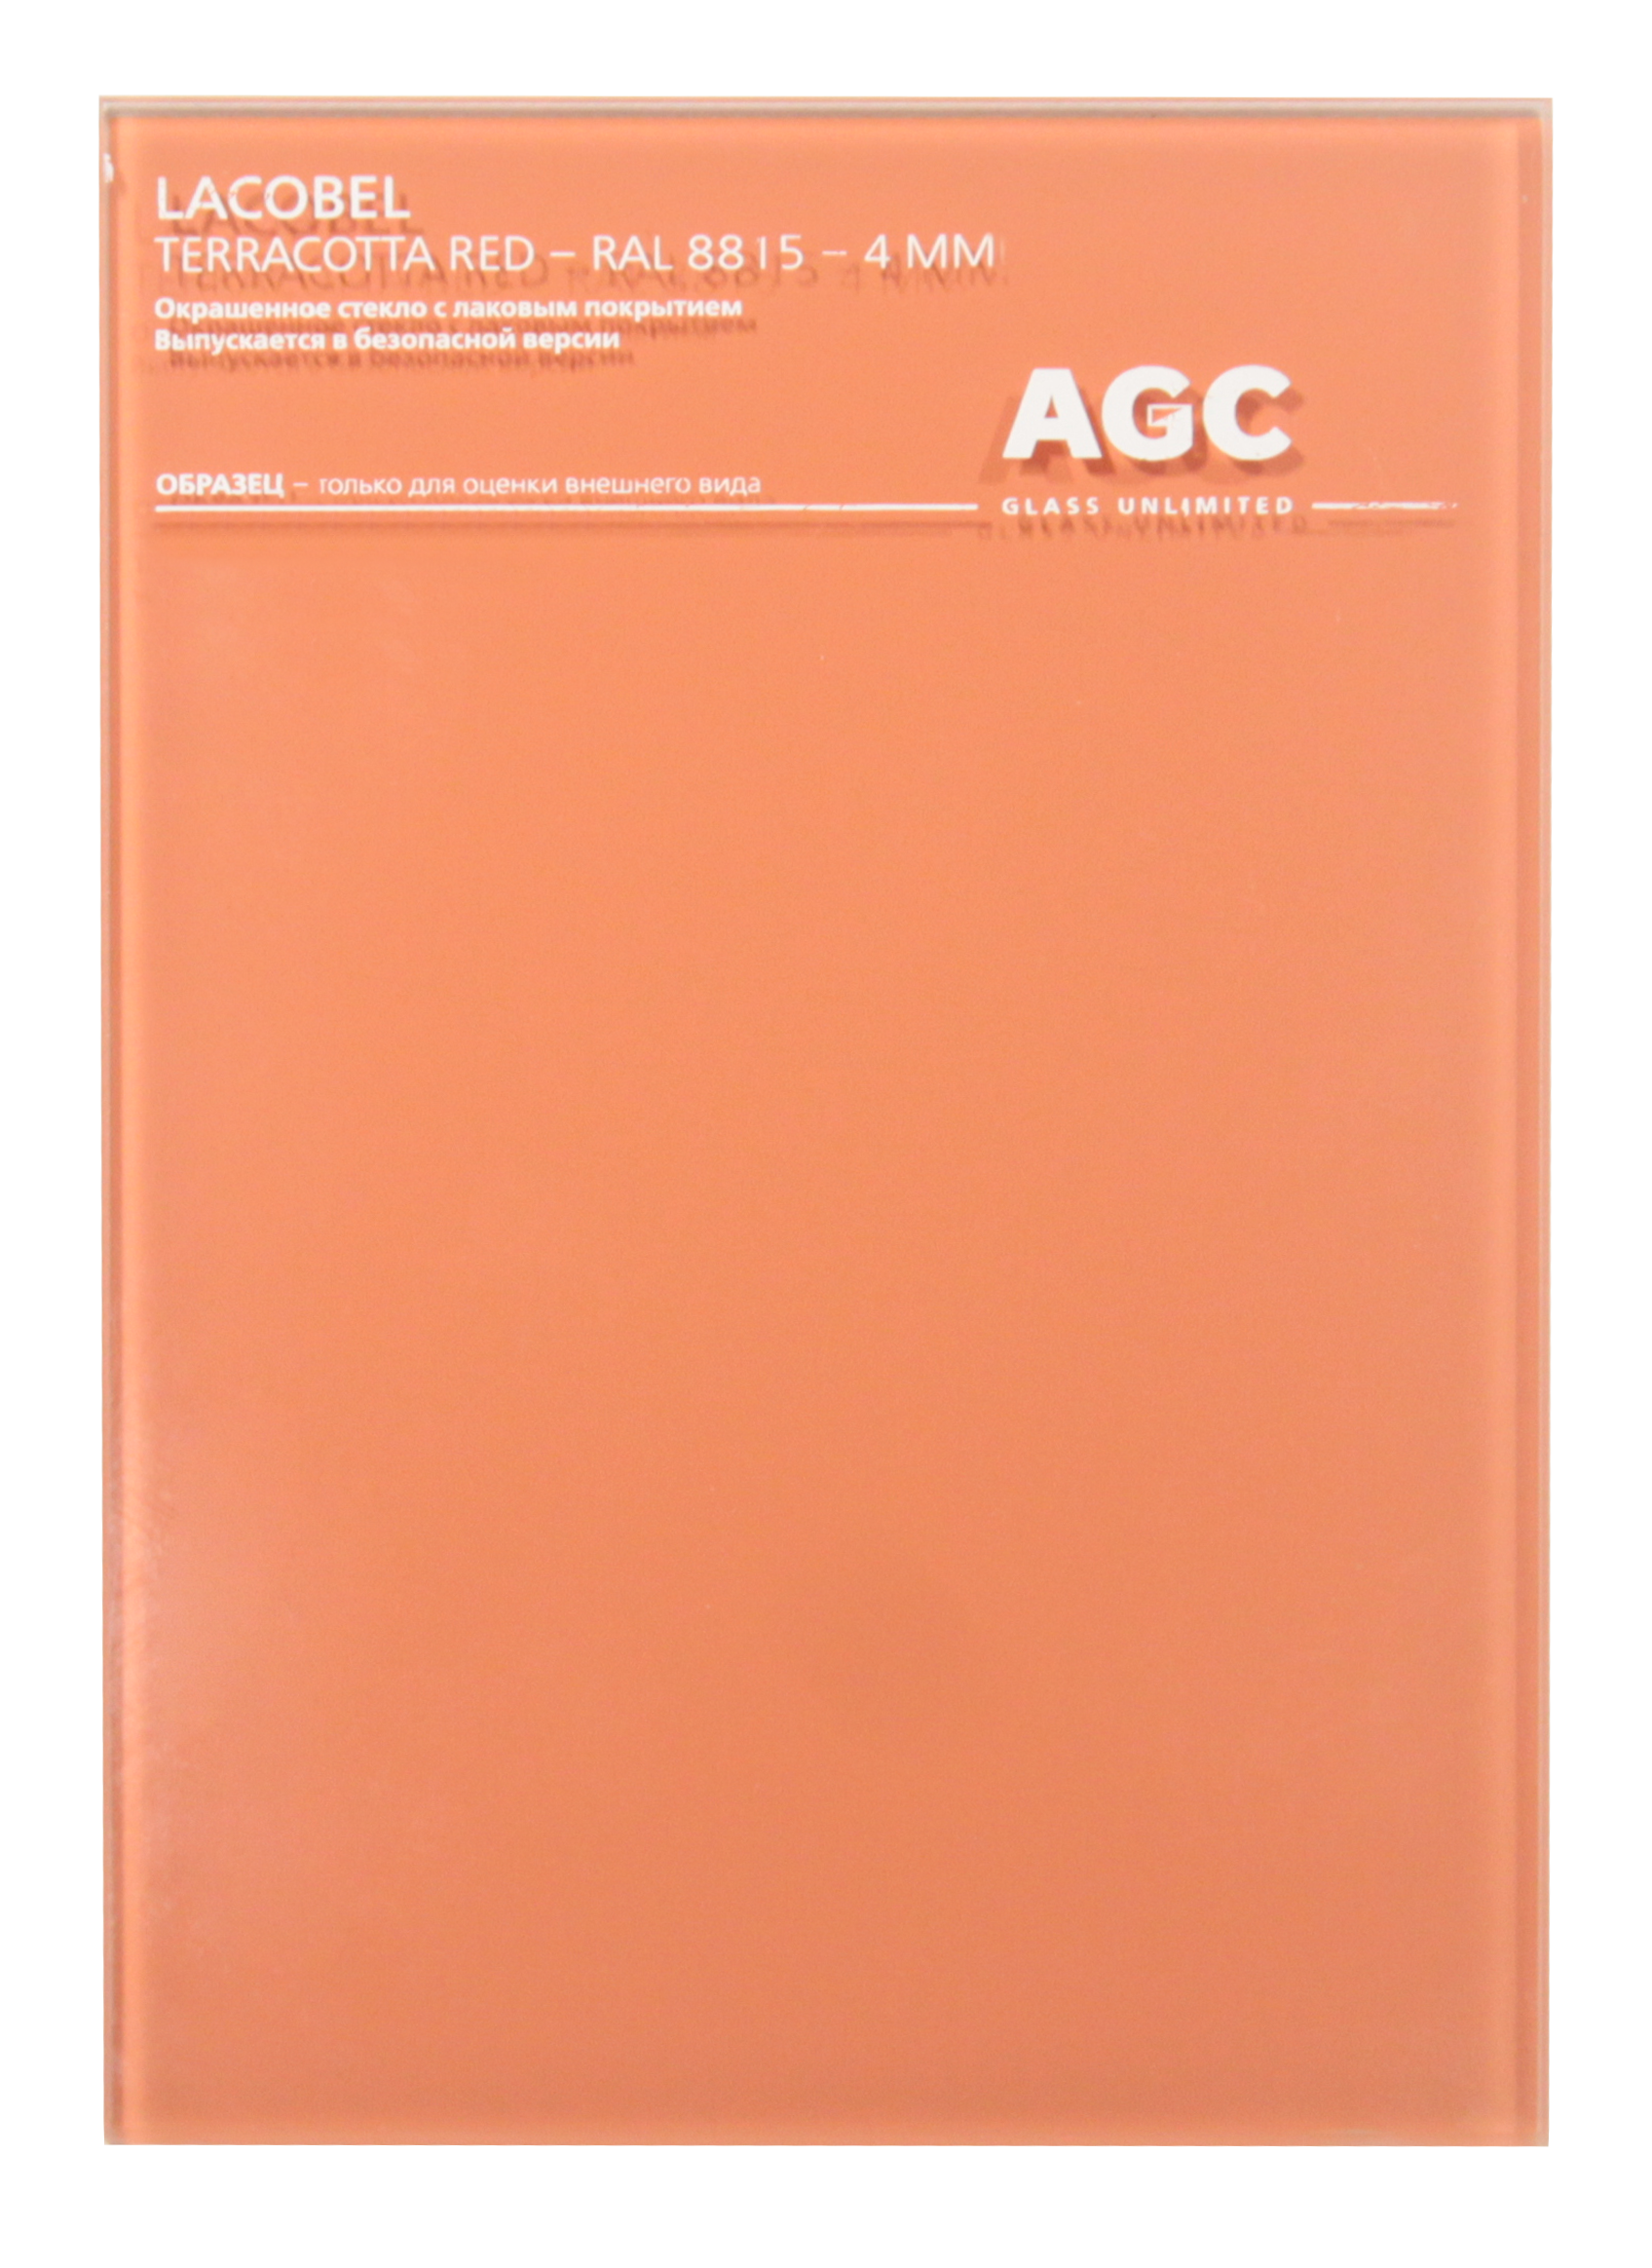 Стекло AGC LACOBEL Terracota Red RAL8815 2550*1605*4мм (выводим)